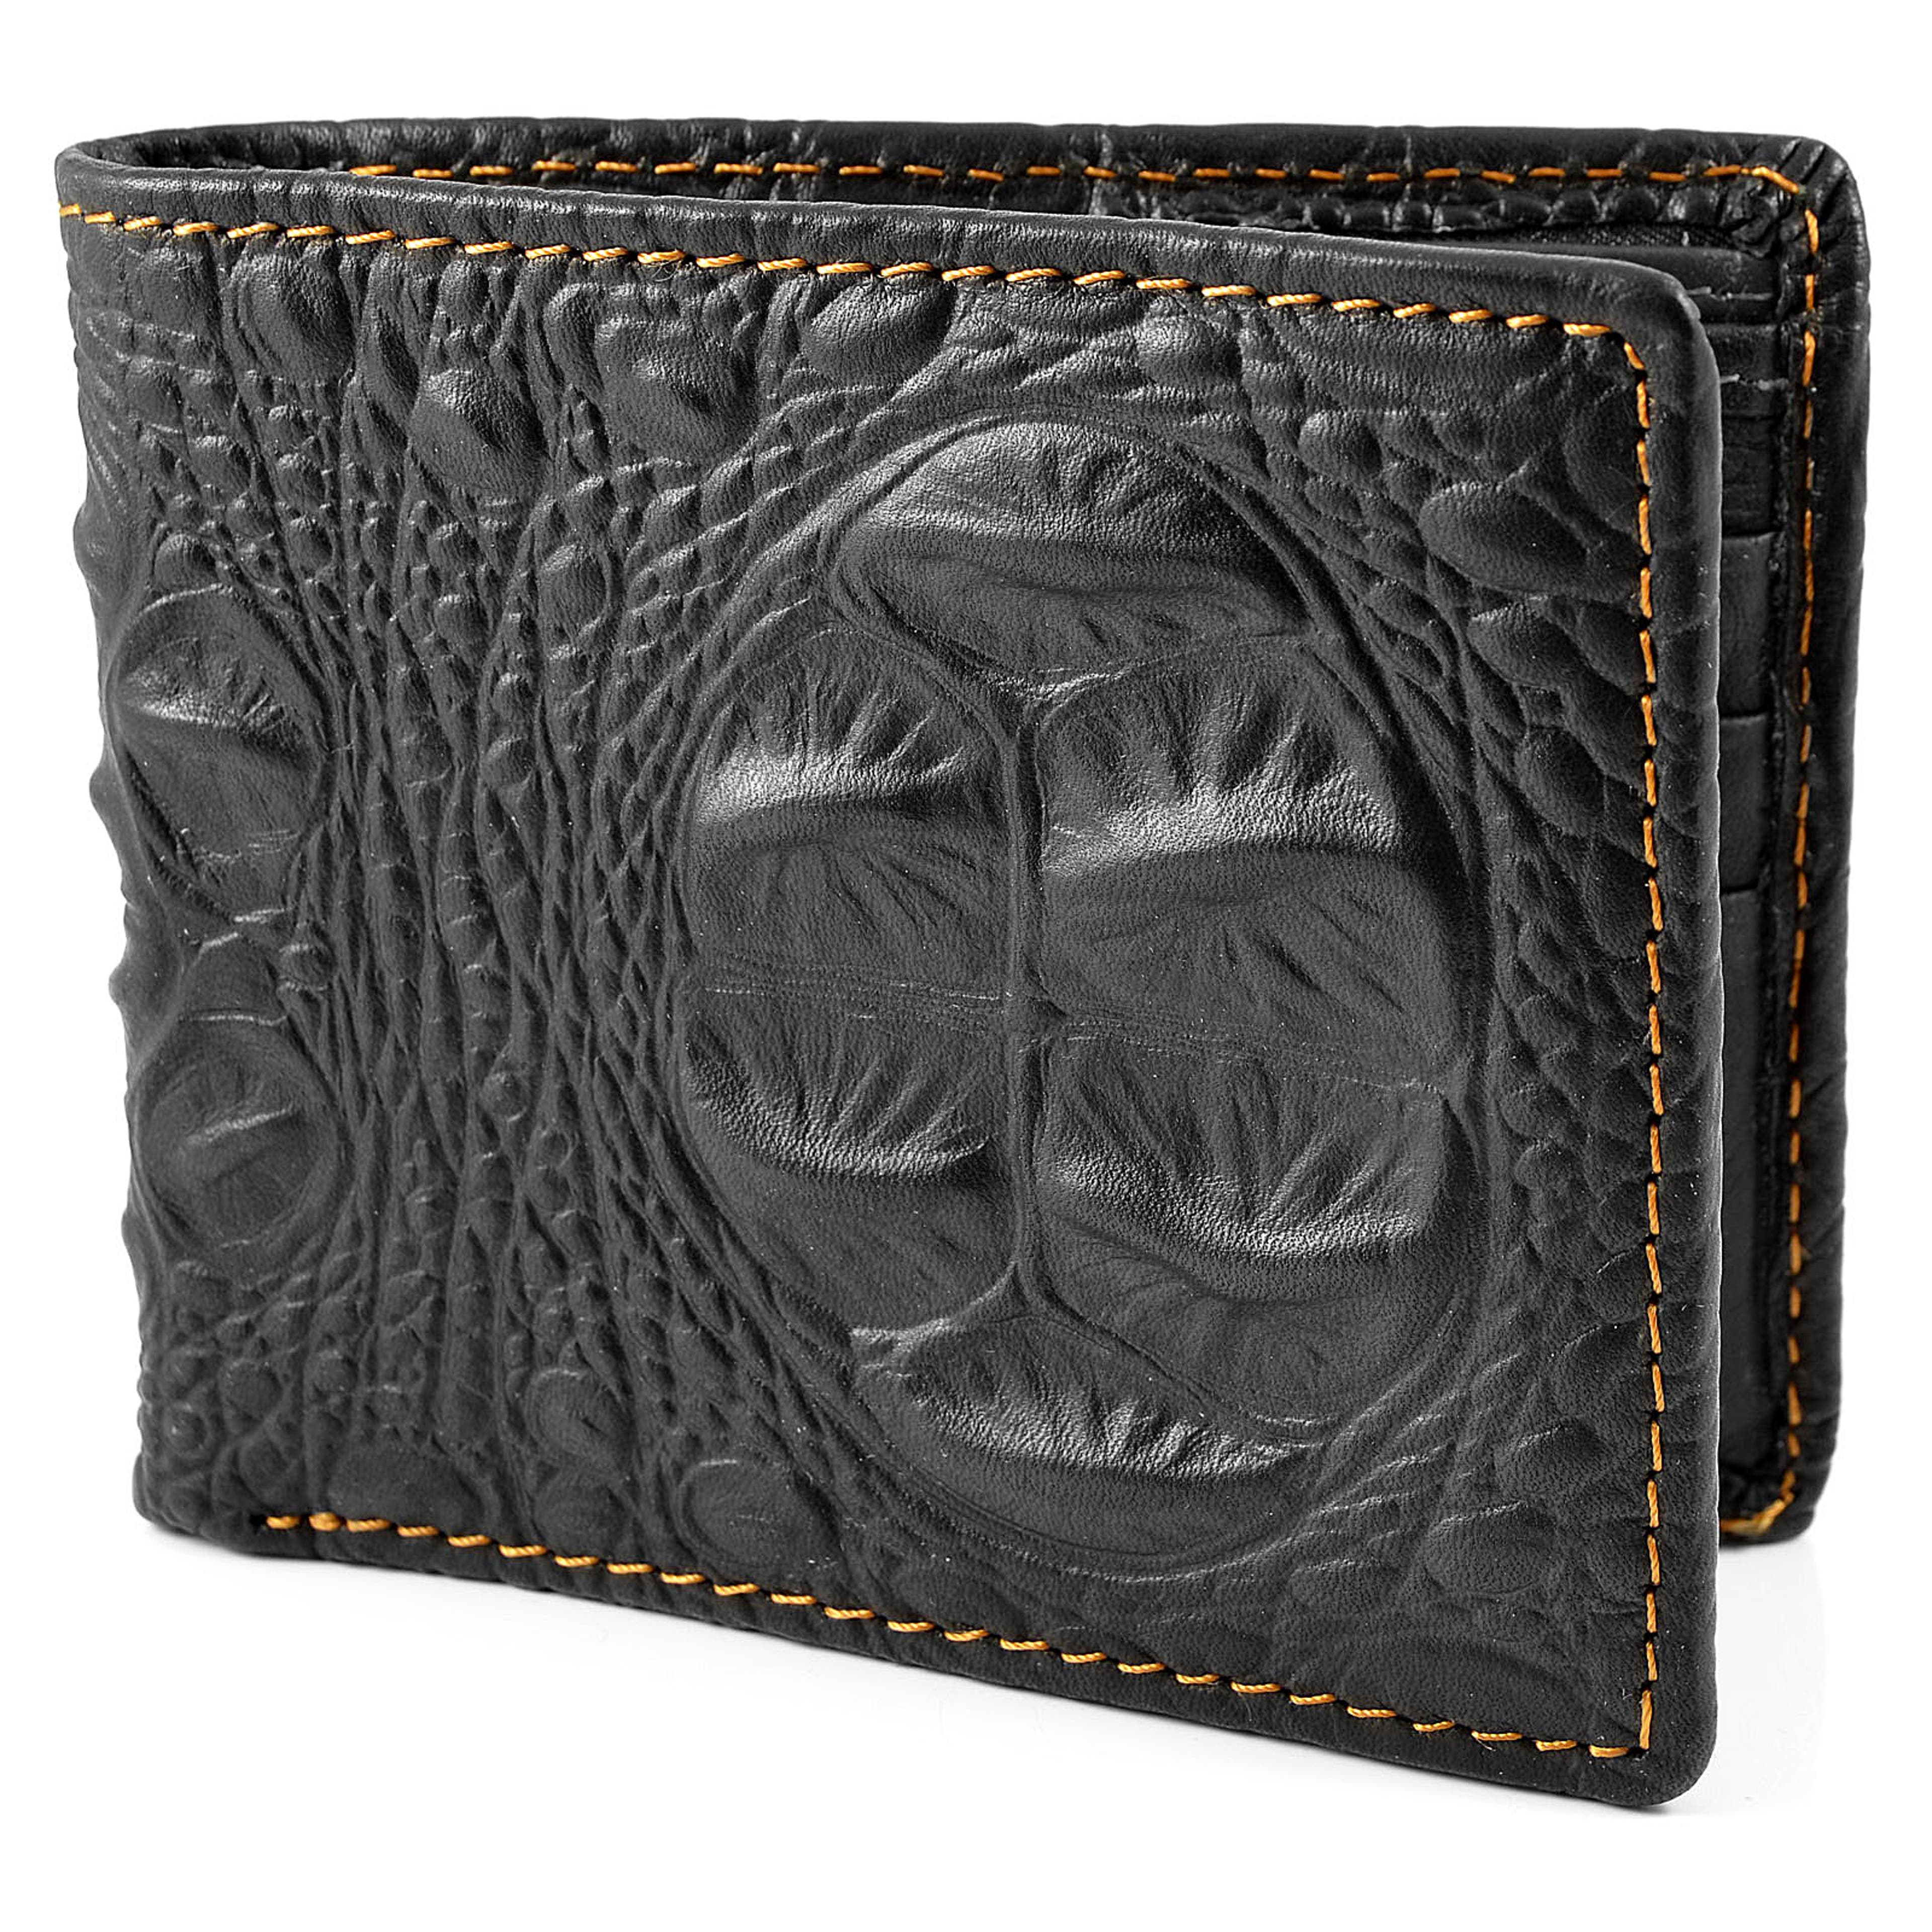 Black Leather & Alligator Skin Patterned Wallet